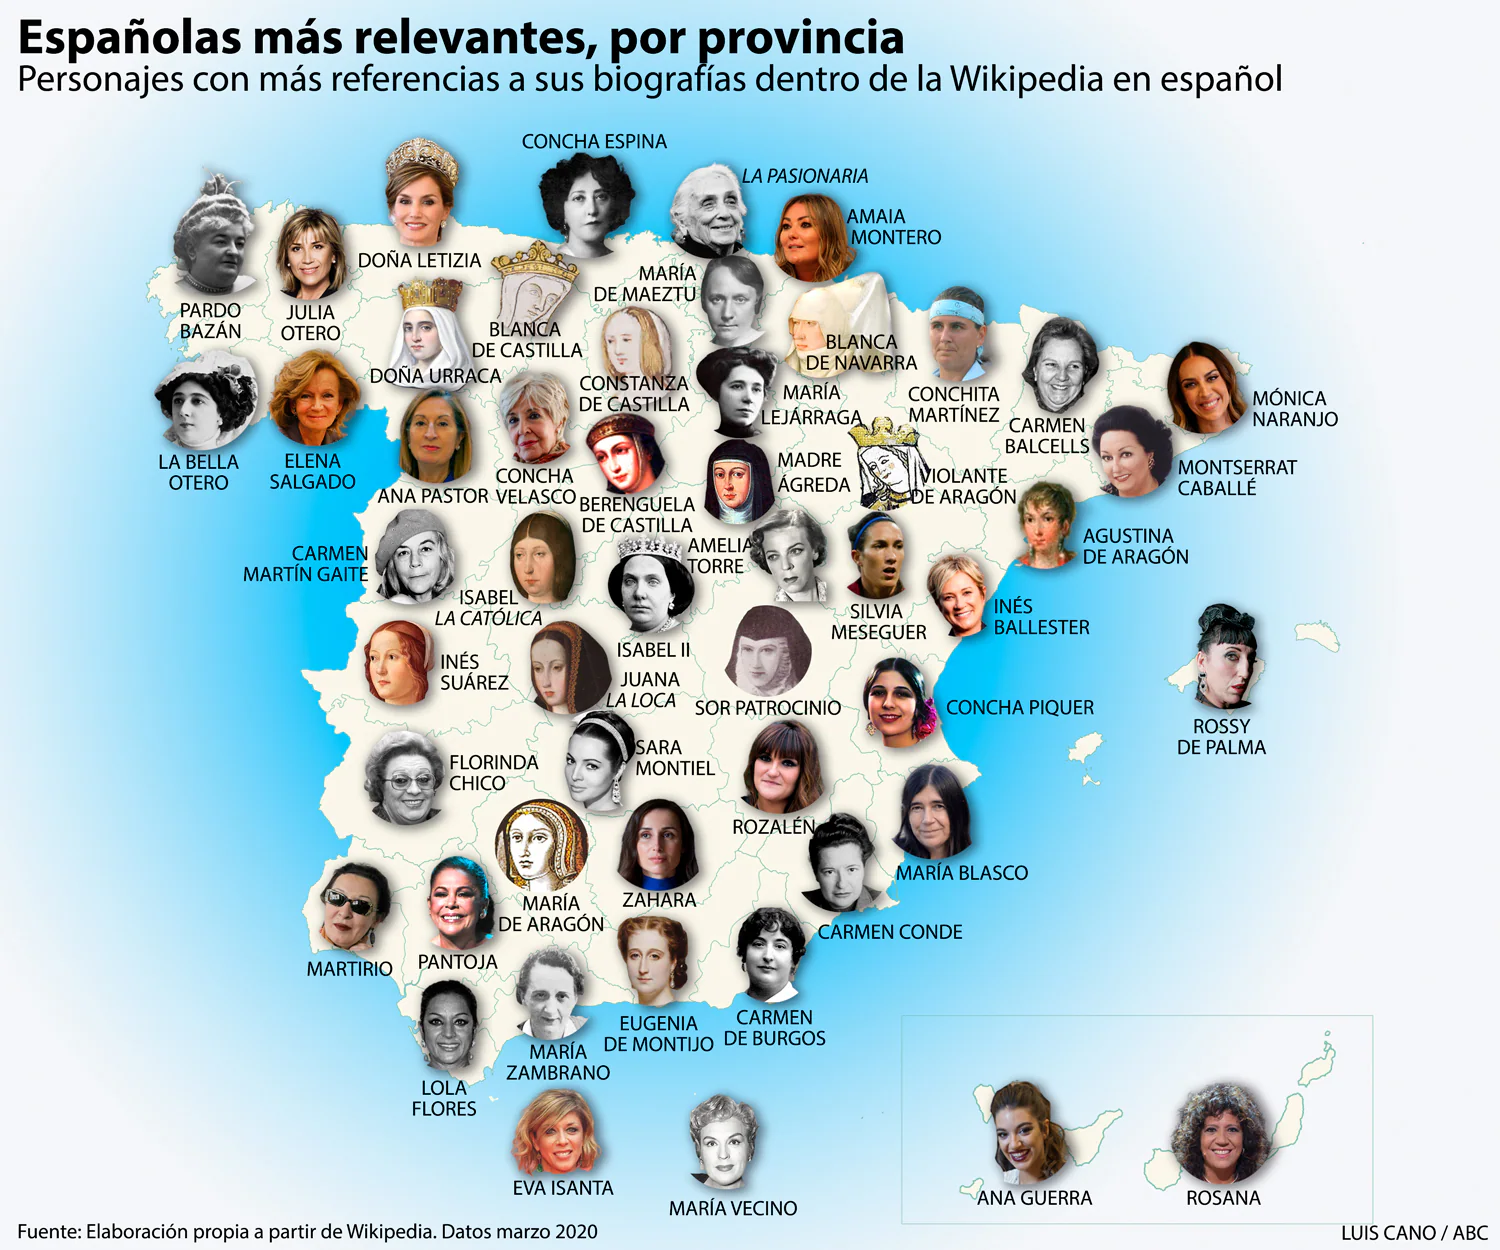 El mapa de las españolas más relevantes de la historia, provincia a provincia